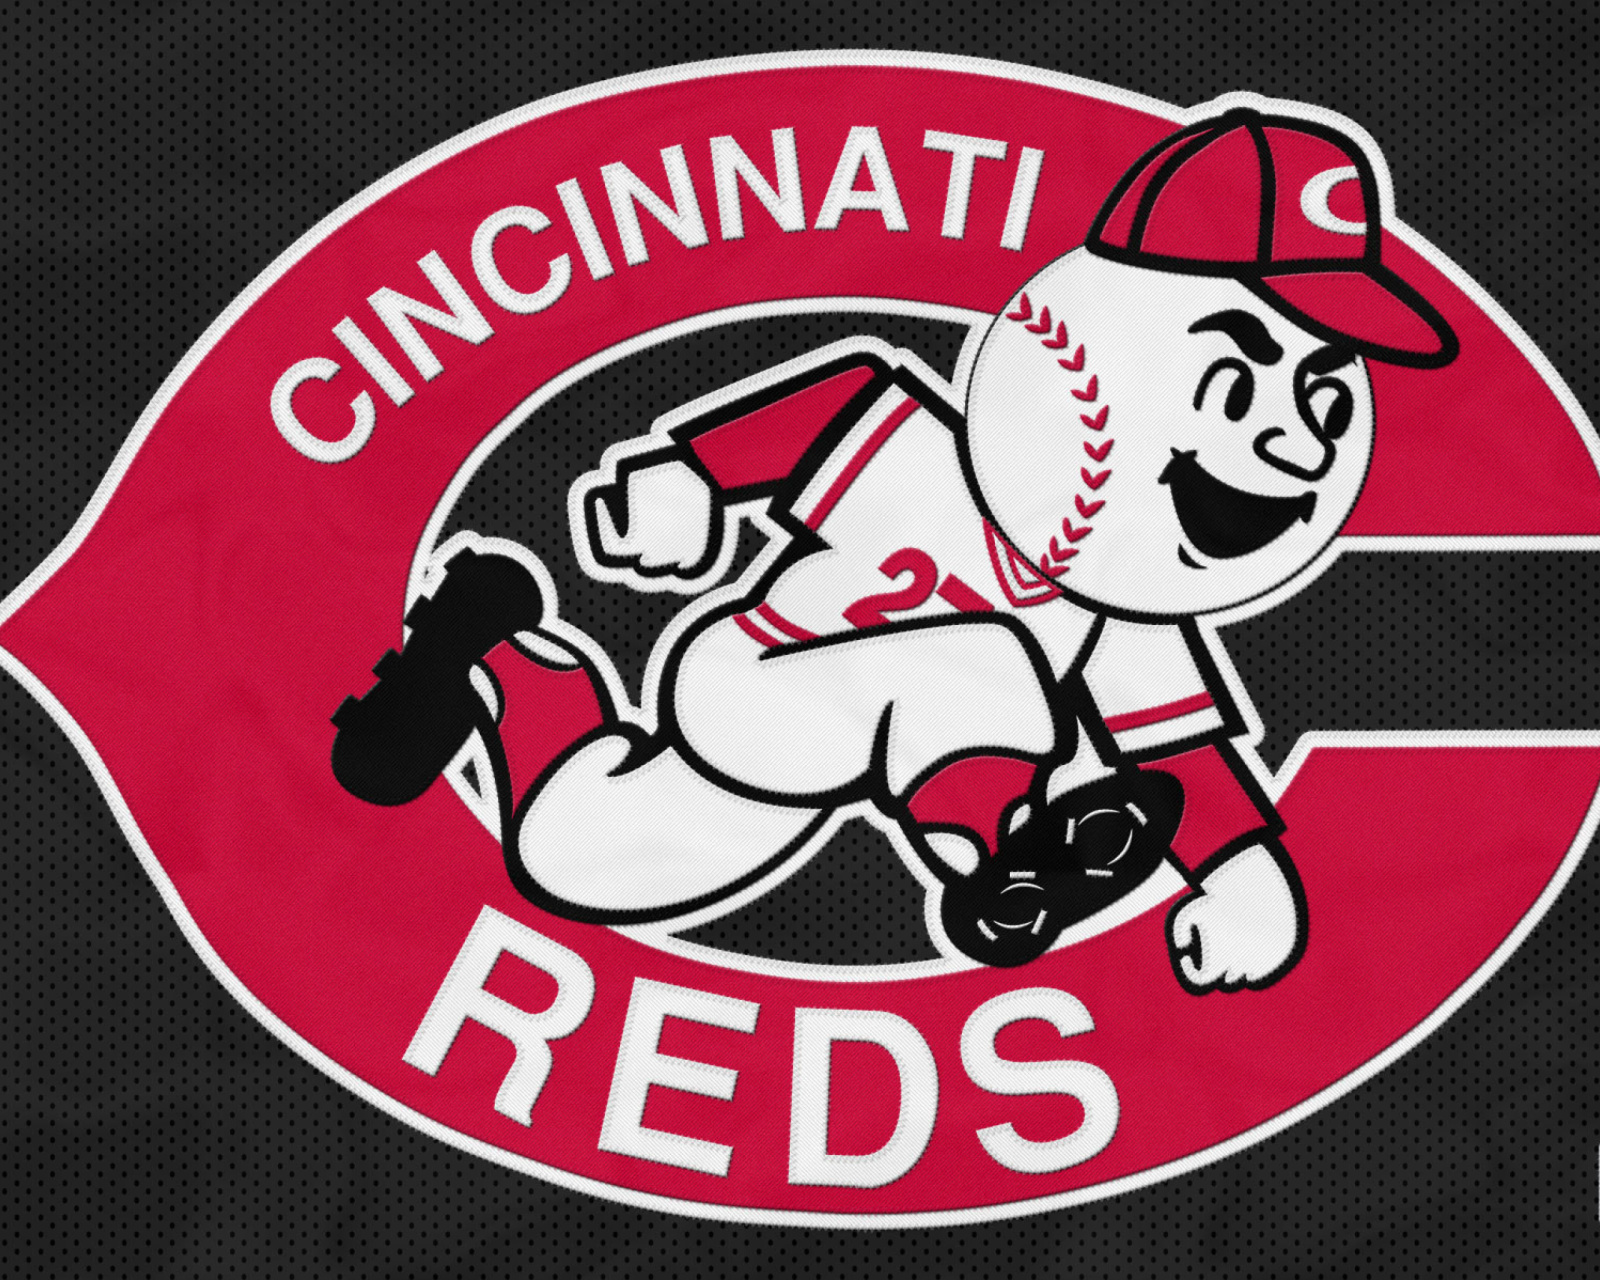 Cincinnati Reds from League Baseball wallpaper 1600x1280